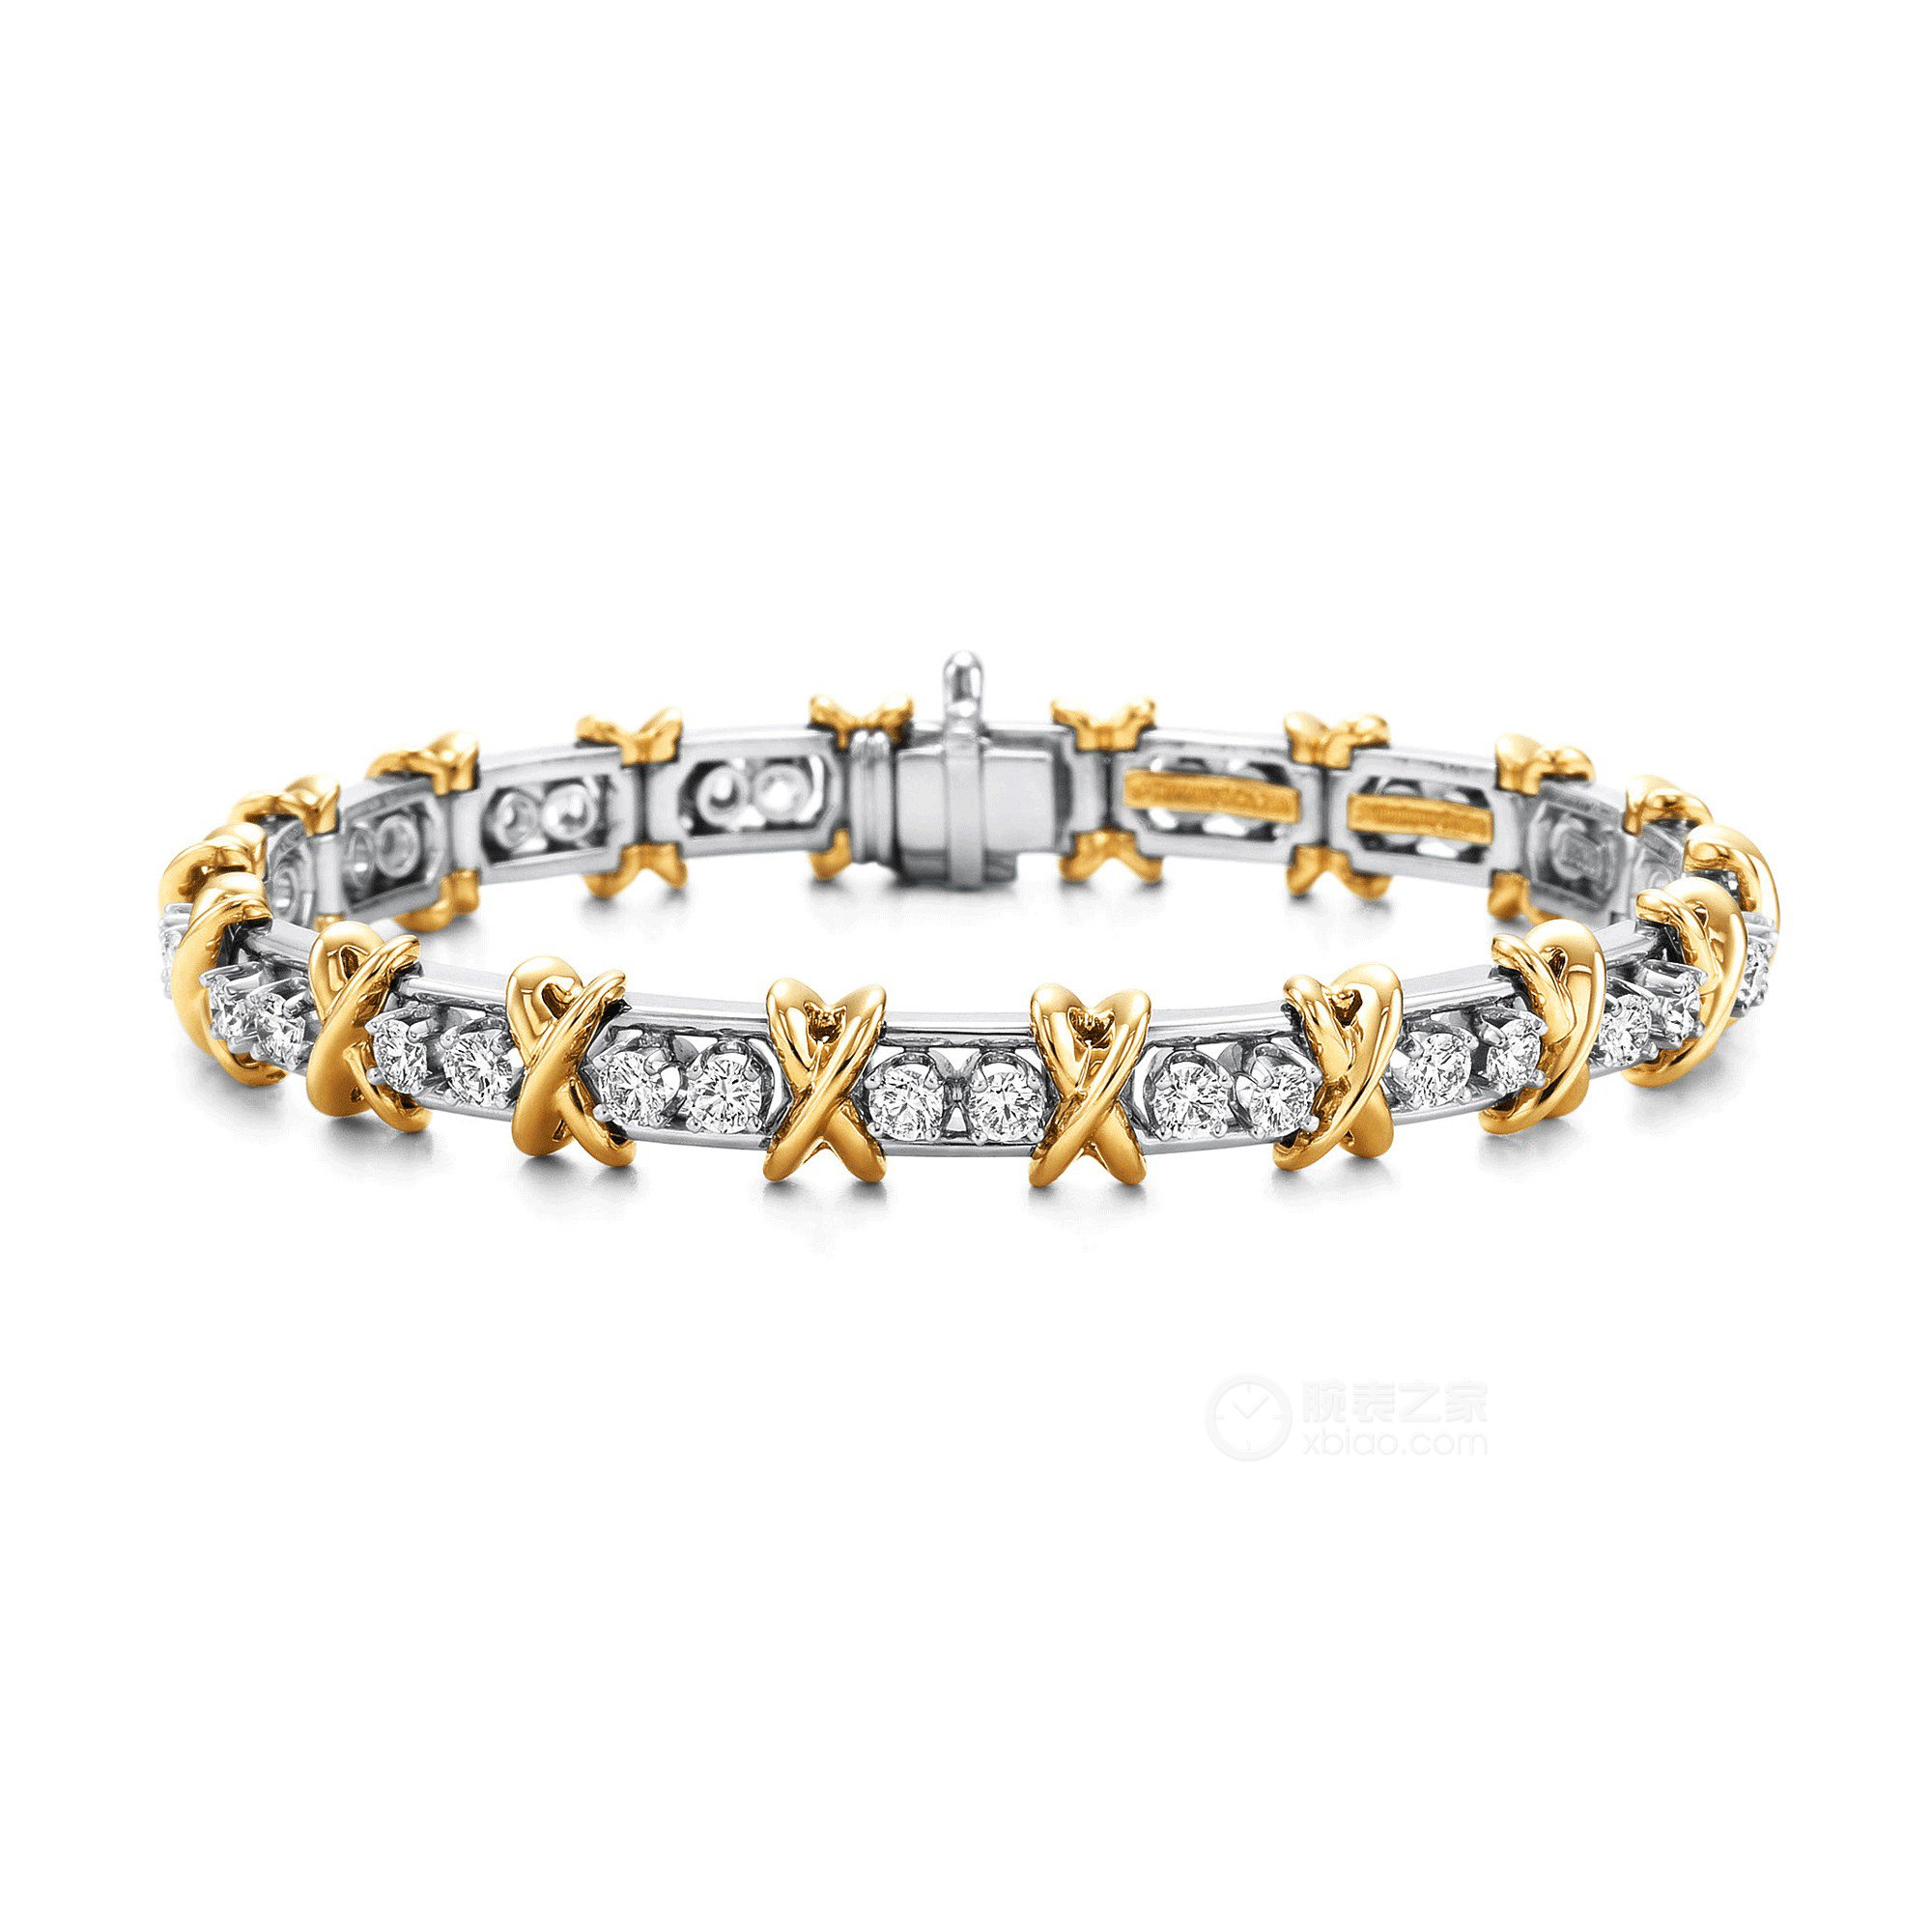 蒂芙尼SCHLUMBERGER™高级珠宝18K黄金镶钻手链手镯